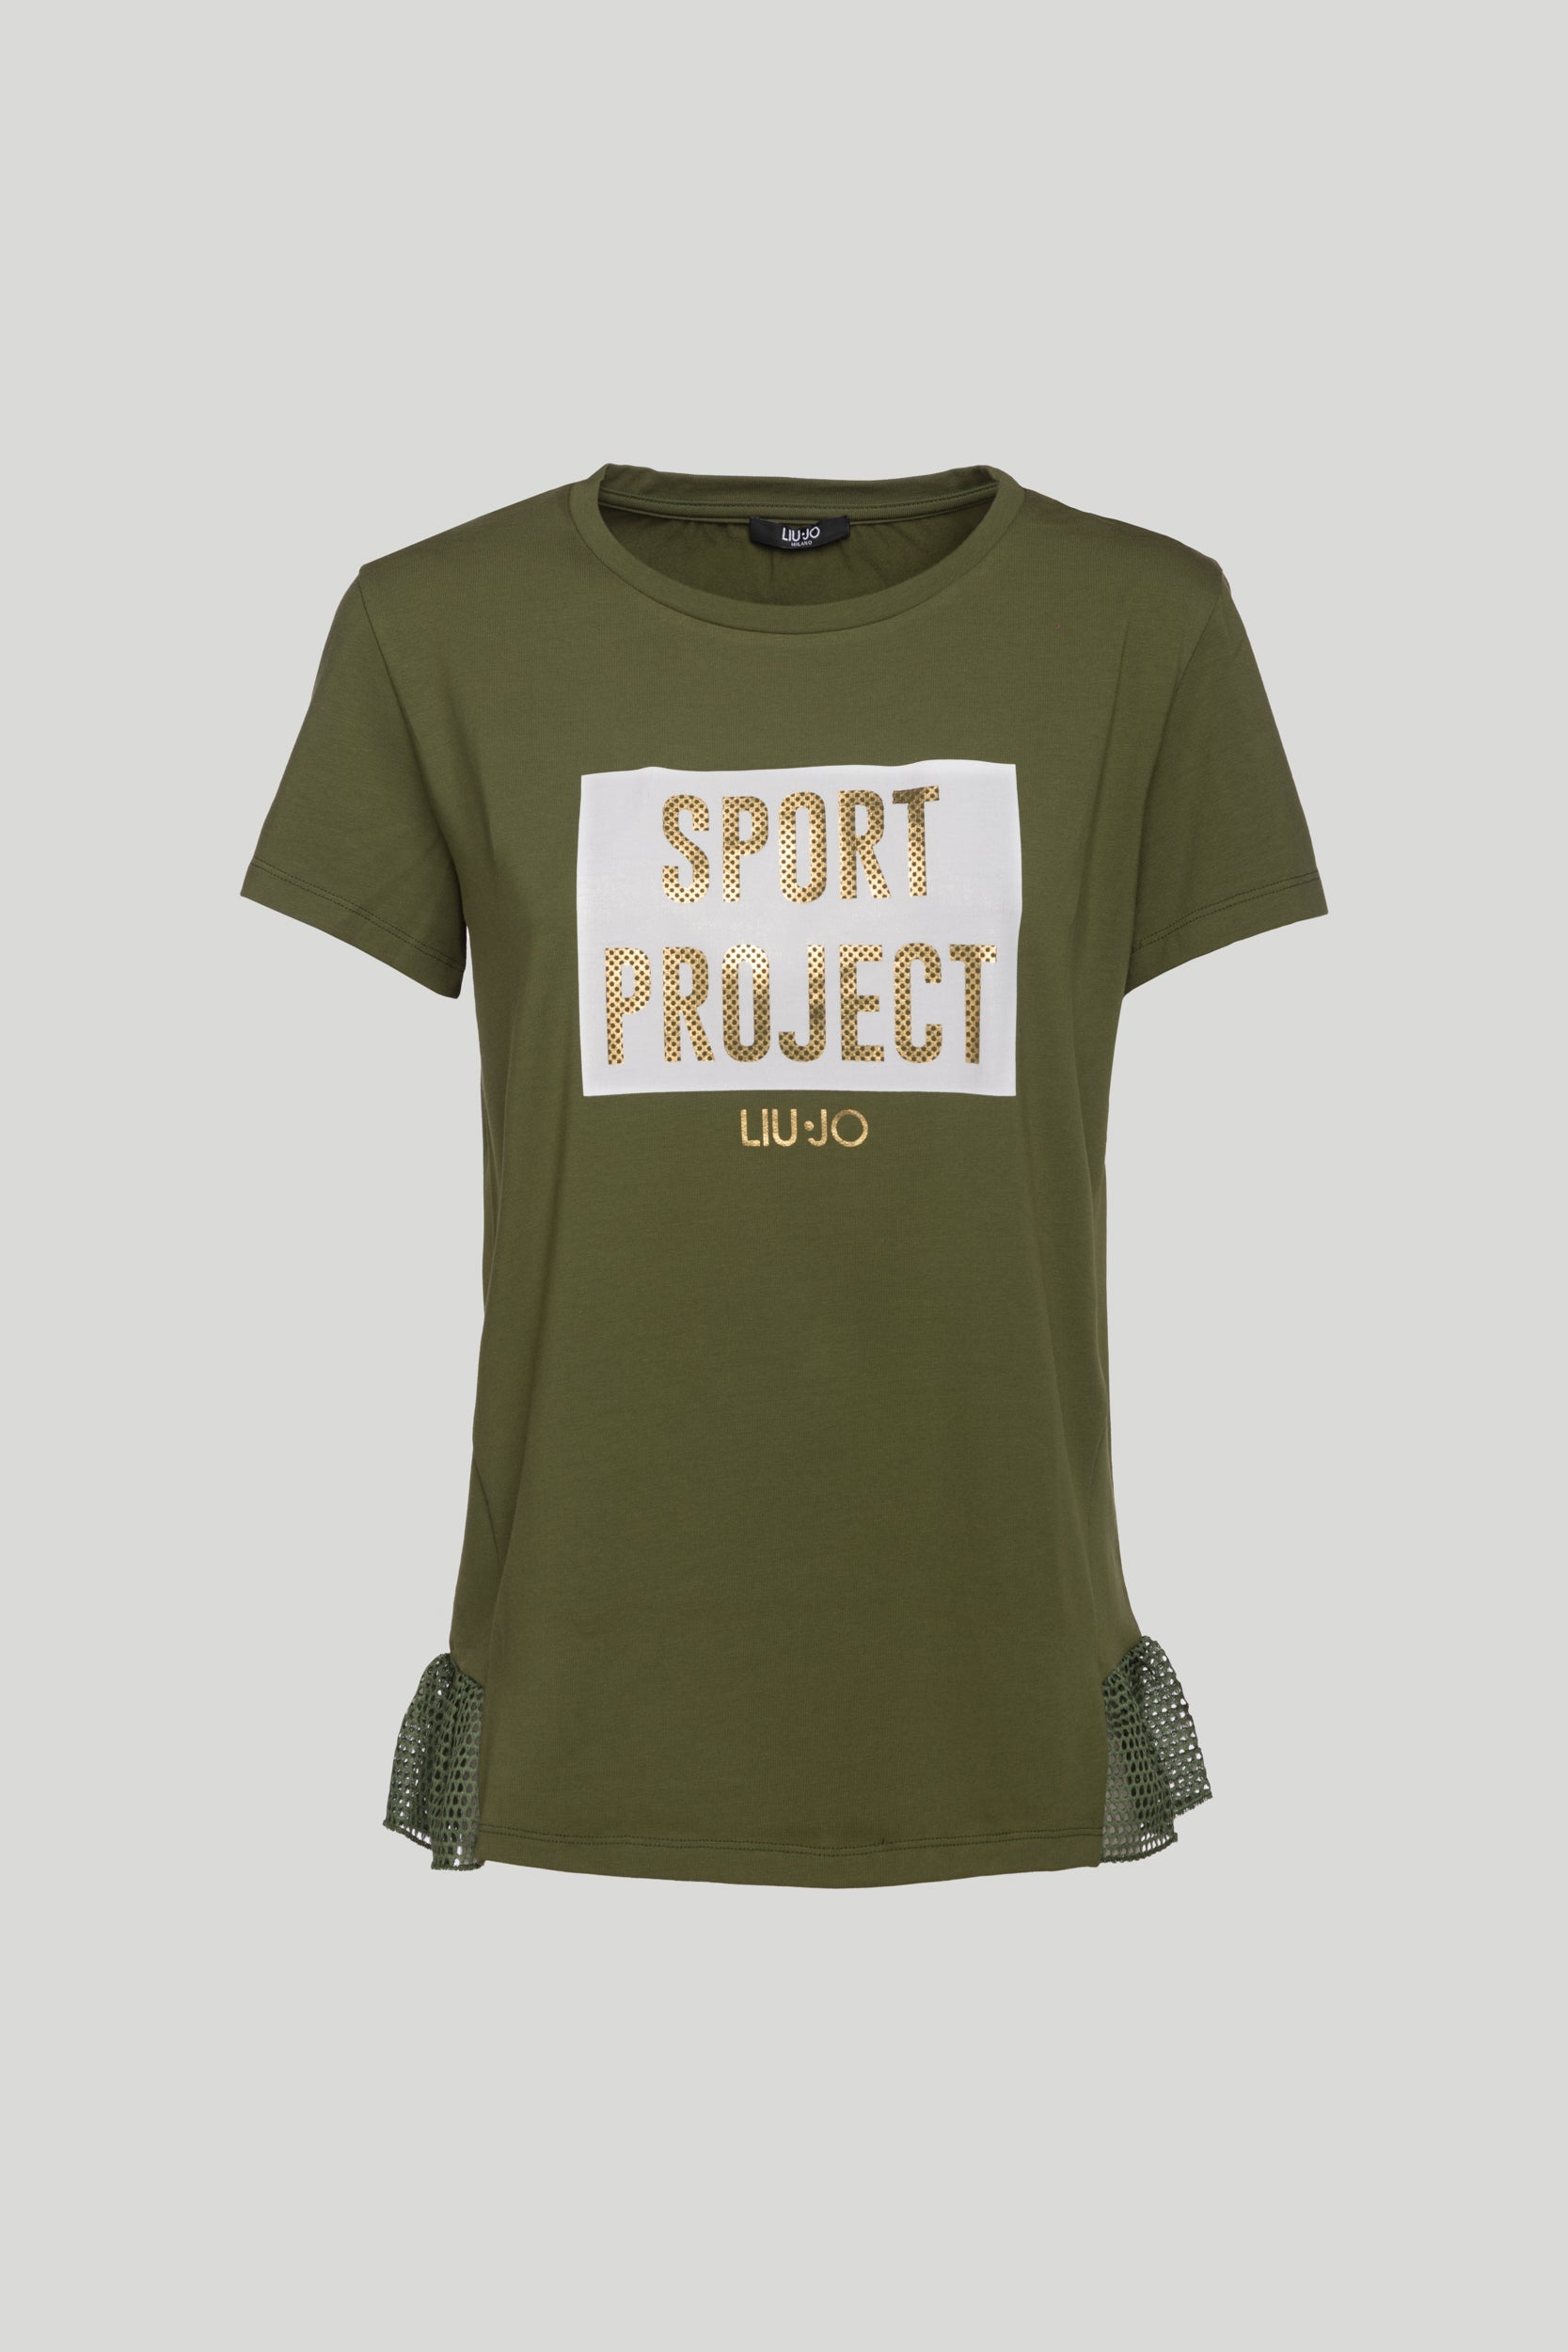 LIU-JO T-Shirt "SPORT PROJECT" Militärgrün